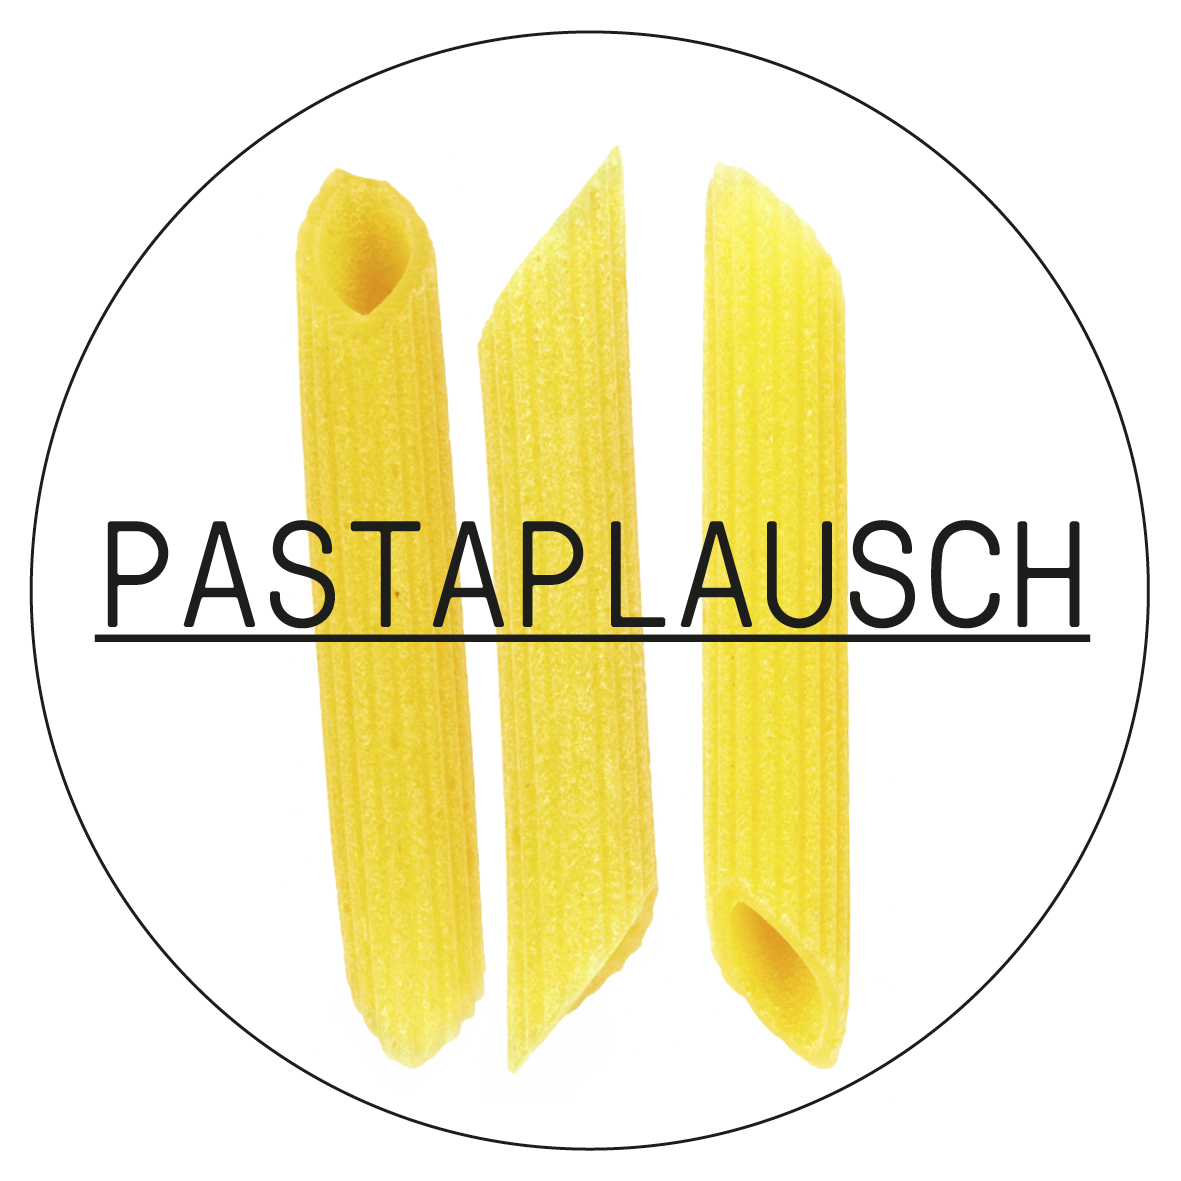 Pastaplausch